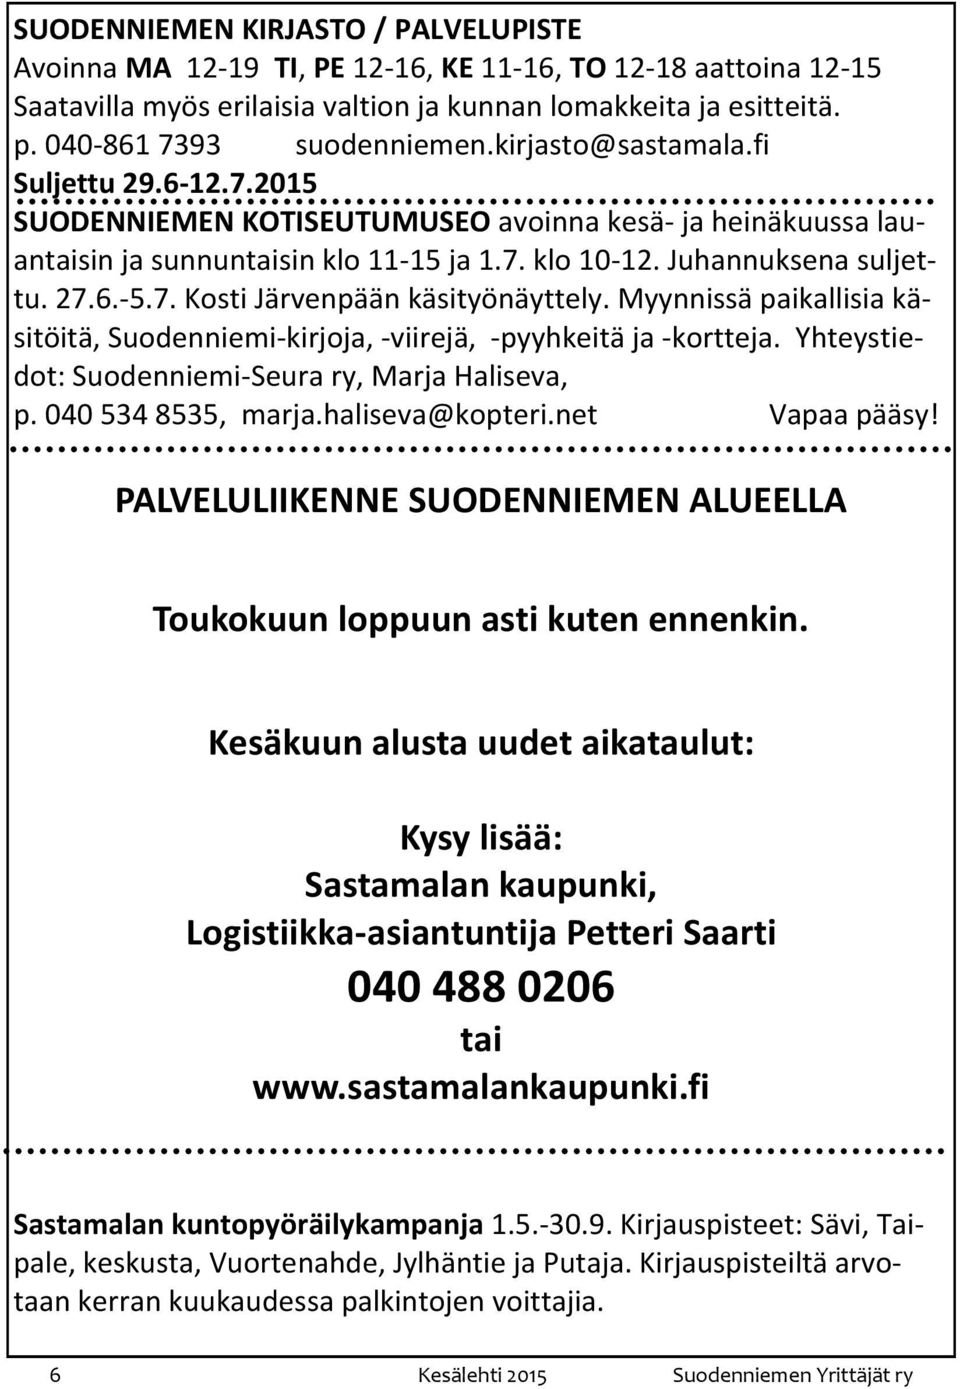 Myynnissä paikallisia käsitöitä, Suodenniemi-kirjoja, -viirejä, -pyyhkeitä ja -kortteja. Yhteystiedot: Suodenniemi-Seura ry, Marja Haliseva, p. 040 534 8535, marja.haliseva@kopteri.net Vapaa pääsy!